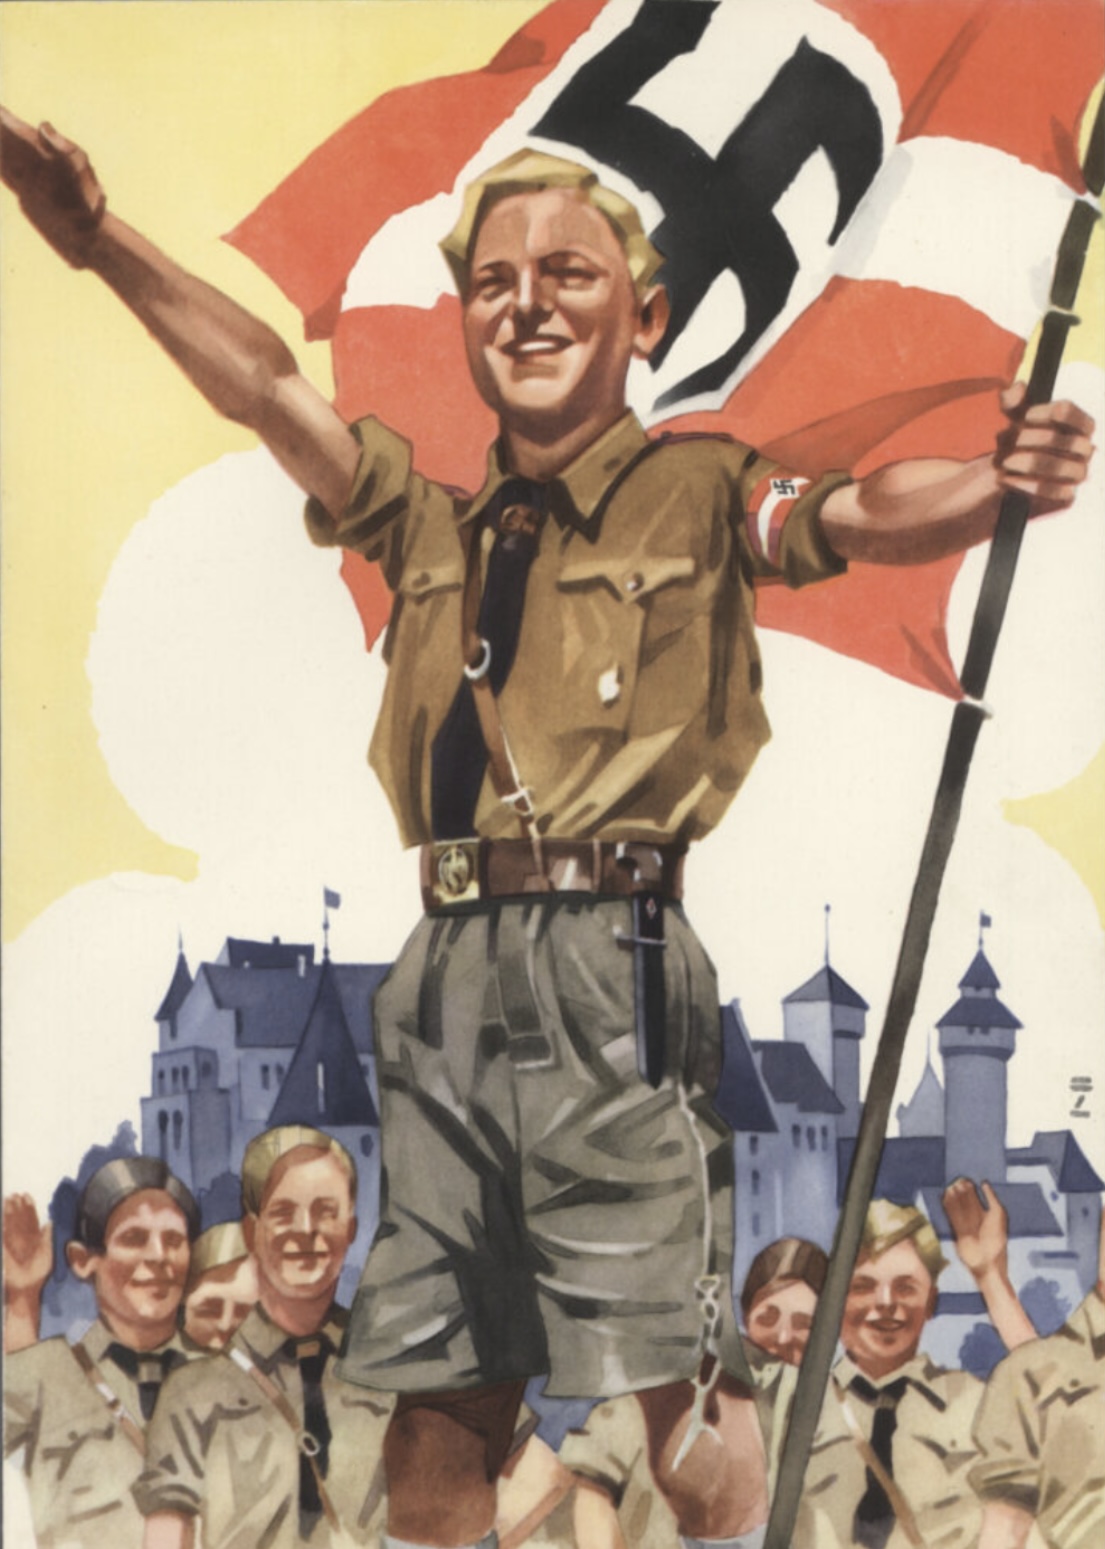 Hitler Youth Blank Meme Template